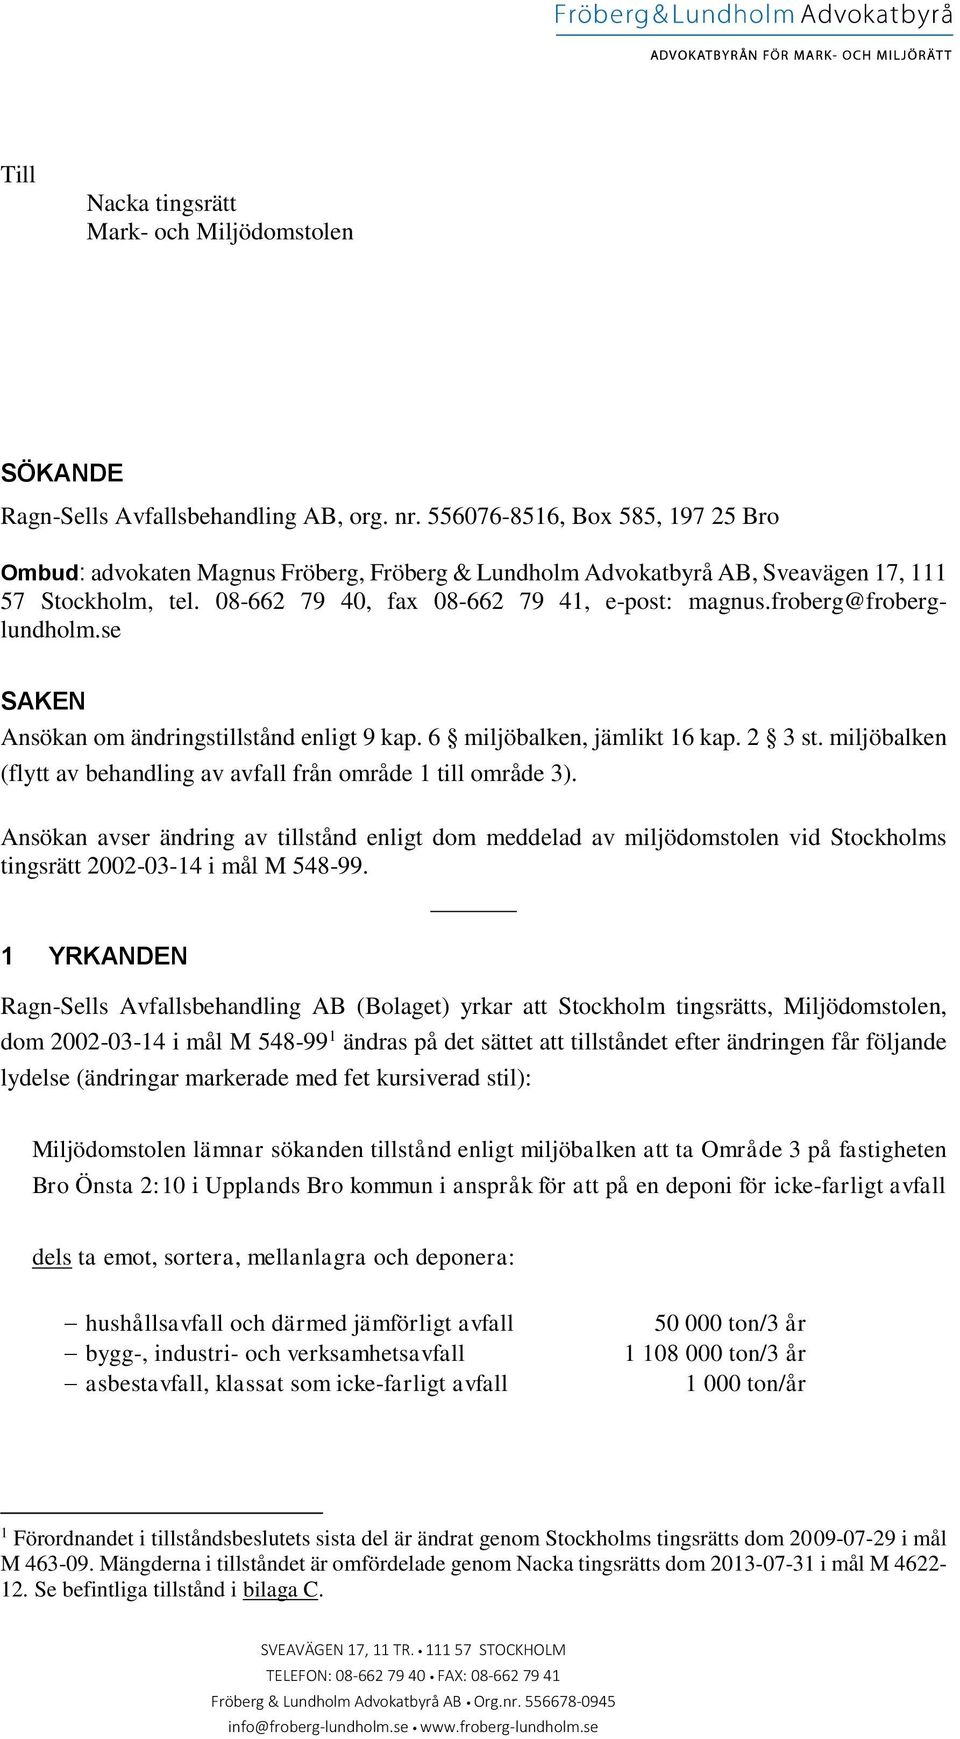 froberg@froberglundholm.se SAKEN Ansökan om ändringstillstånd enligt 9 kap. 6 miljöbalken, jämlikt 16 kap. 2 3 st. miljöbalken (flytt av behandling av avfall från område 1 till område 3).